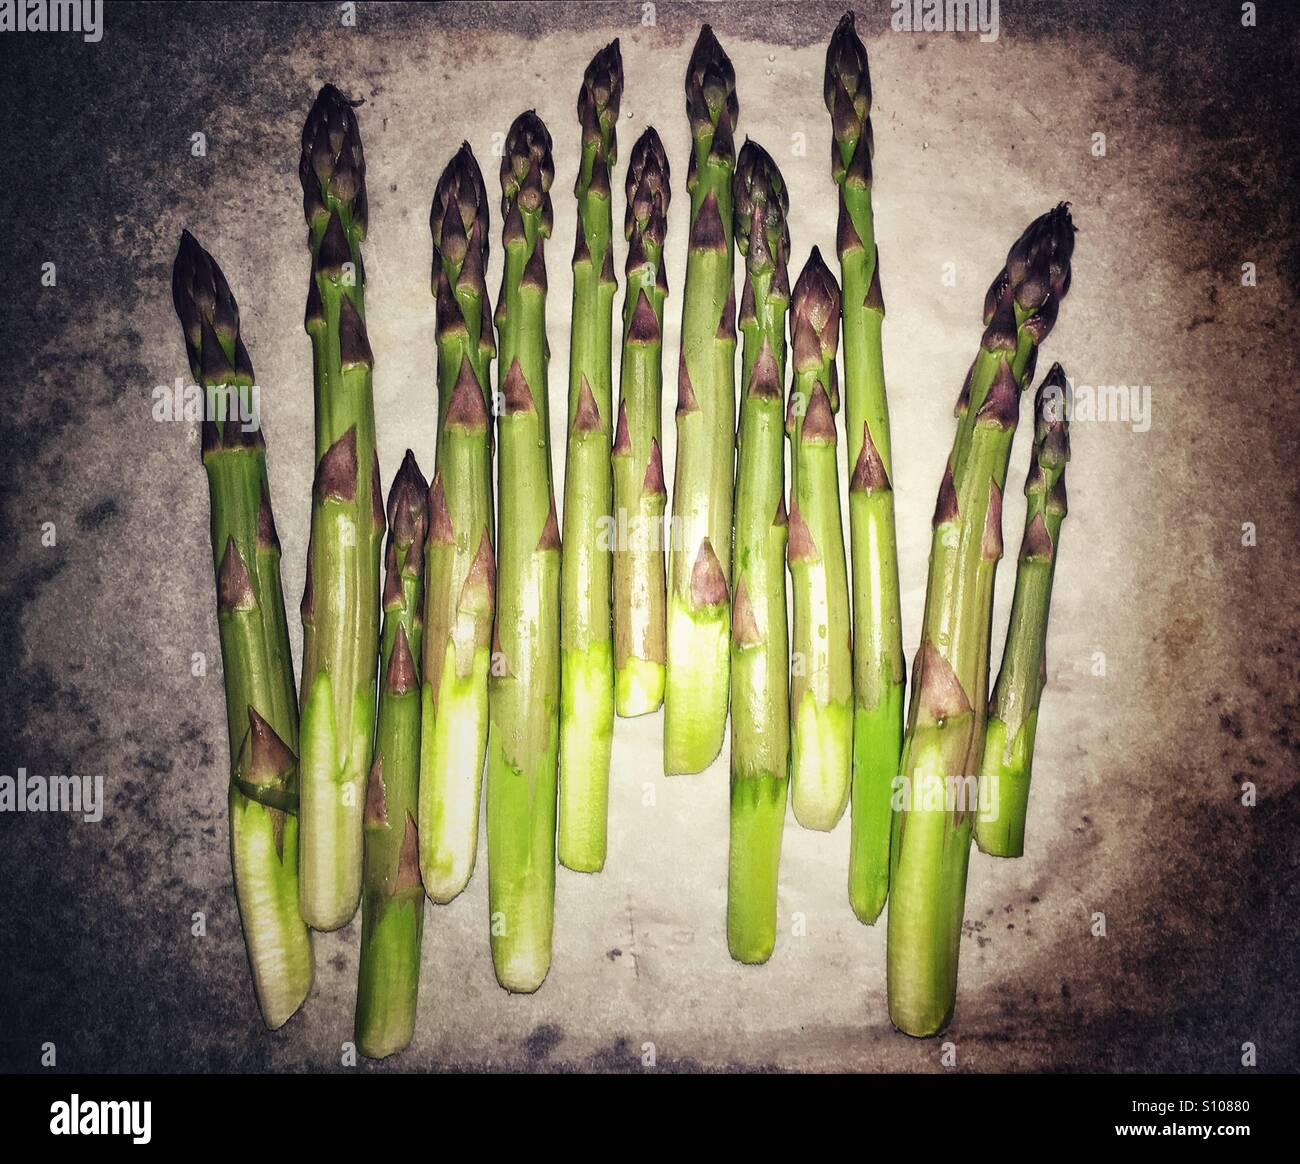 Asparagus on parchment paper Stock Photo